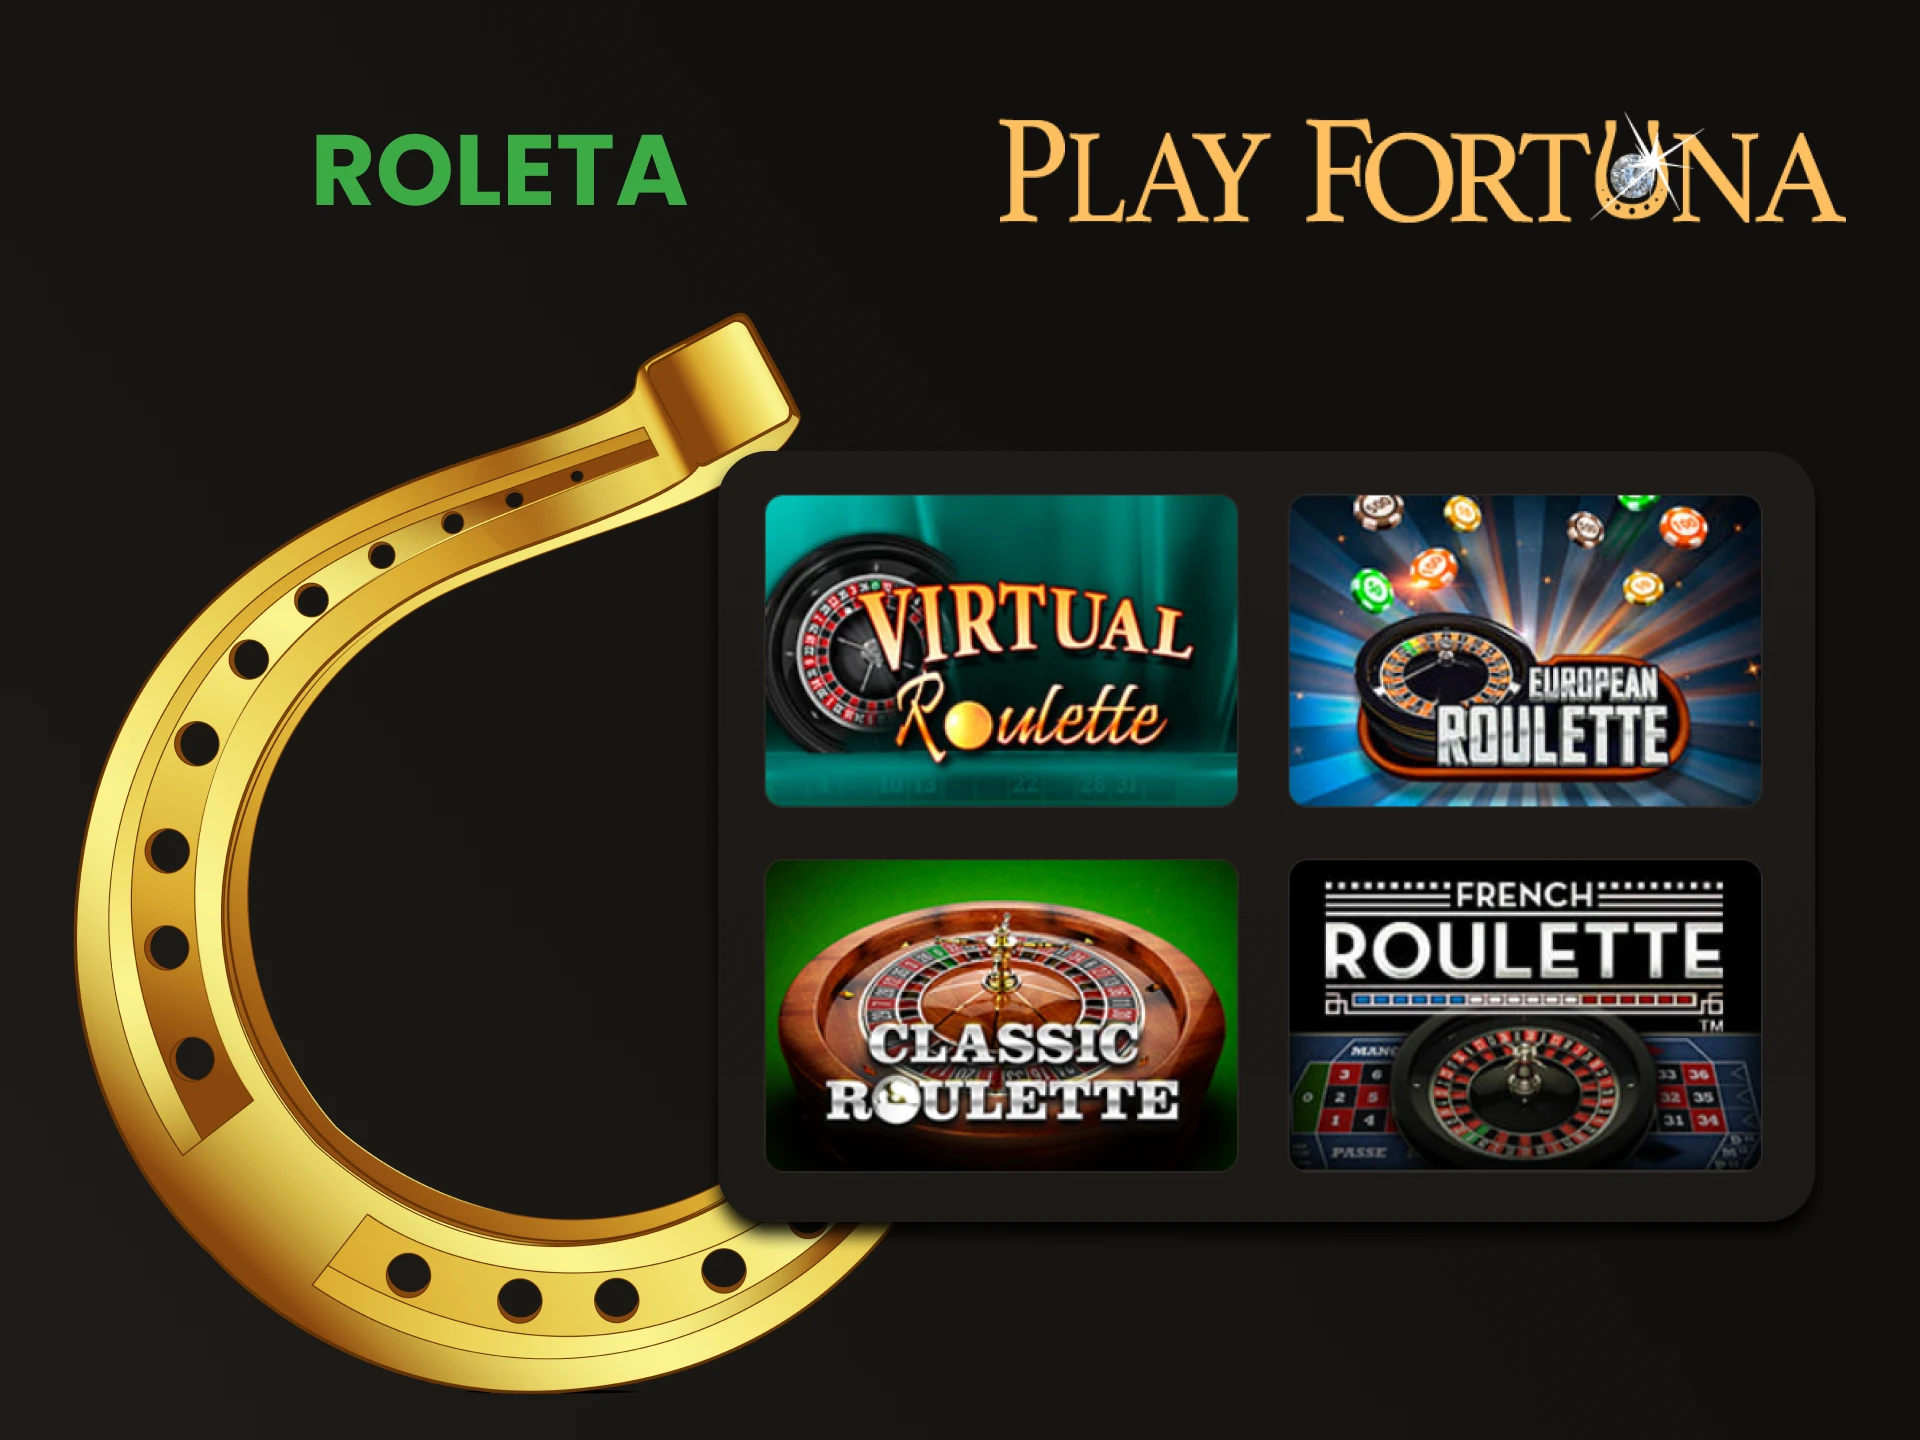 Para jogos de tabuleiro no Play Fortuna, escolha Roleta.